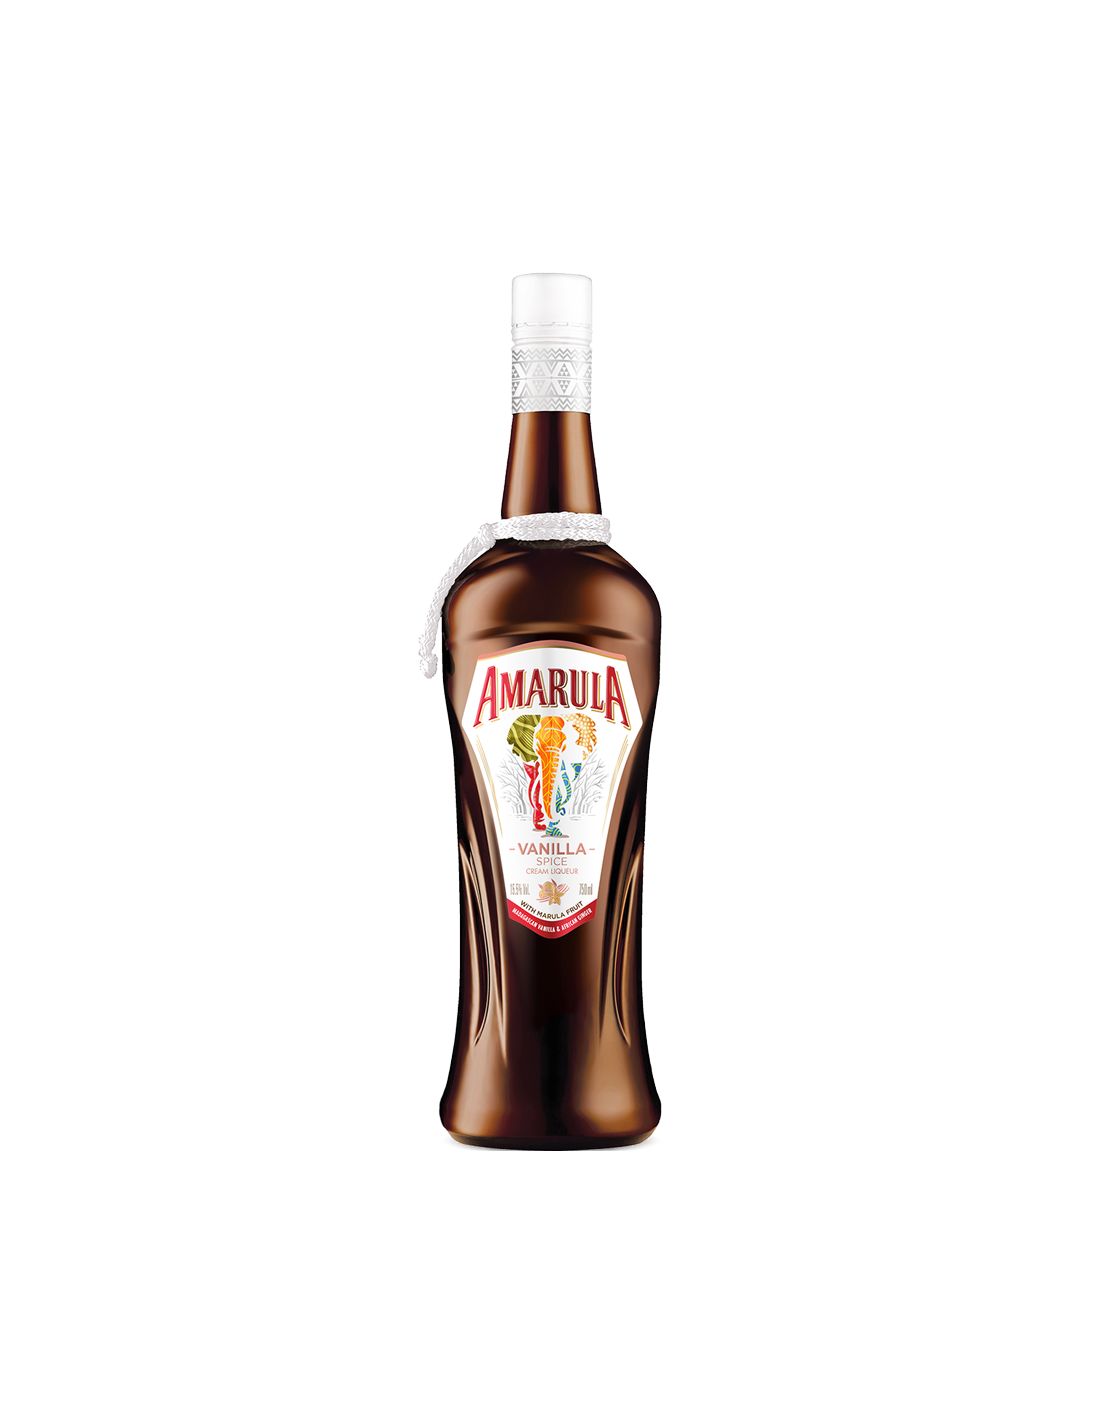 Lichior Amarula Vanilla Spice, 15.5% alc., 0.7L, Africa de Sud alcooldiscount.ro